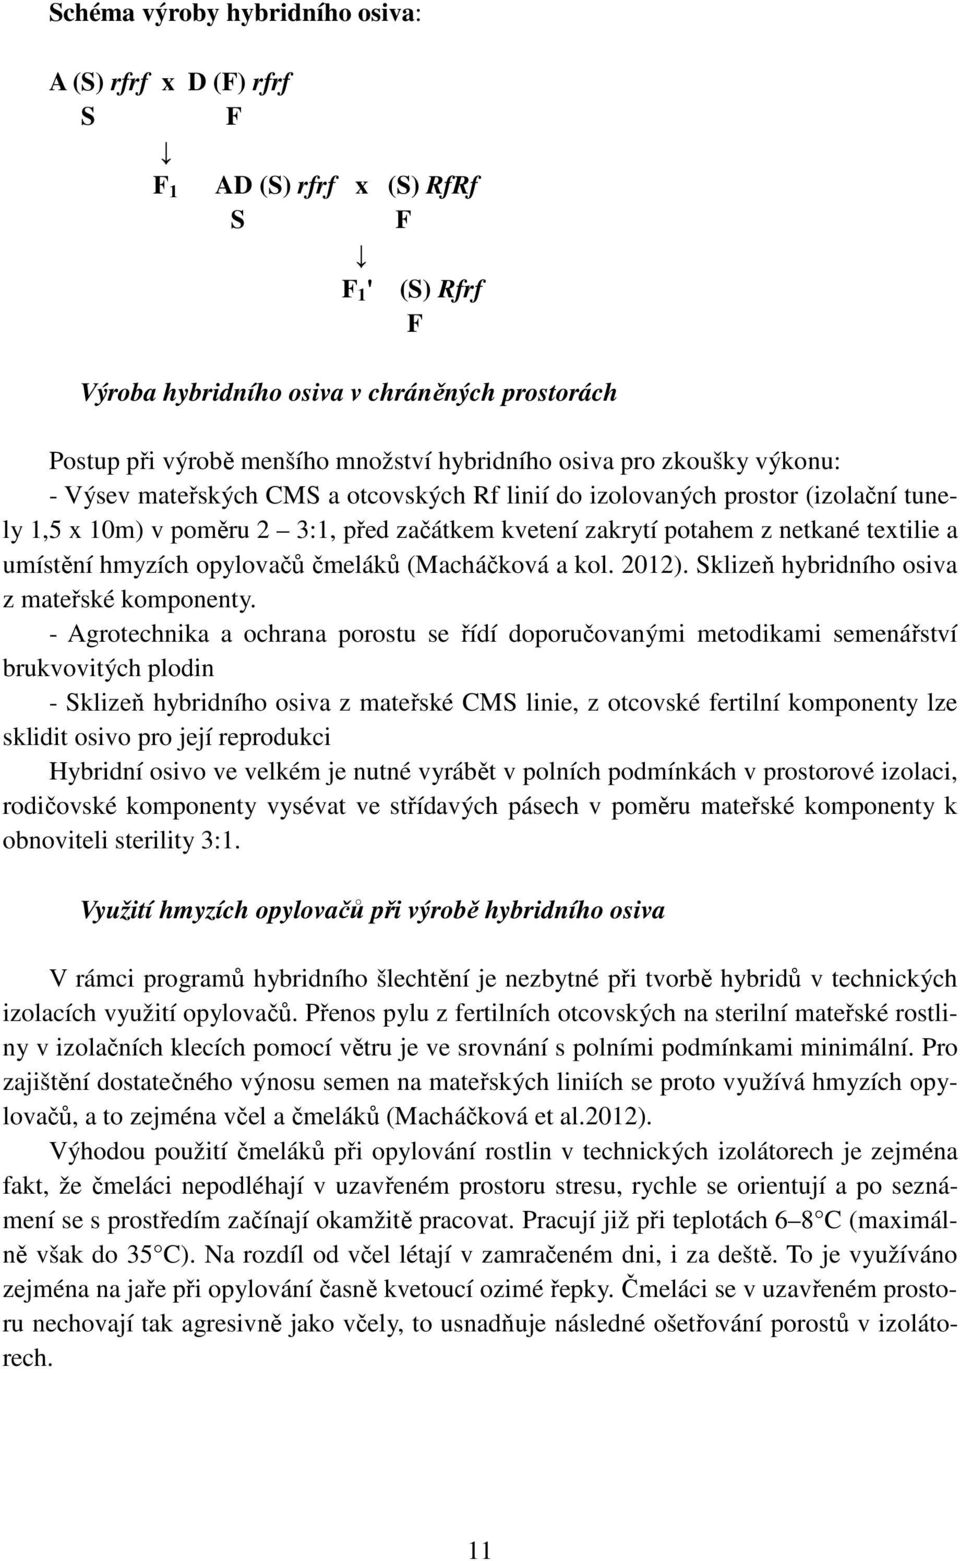 textilie a umístění hmyzích opylovačů čmeláků (Macháčková a kol. 2012). Sklizeň hybridního osiva z mateřské komponenty.